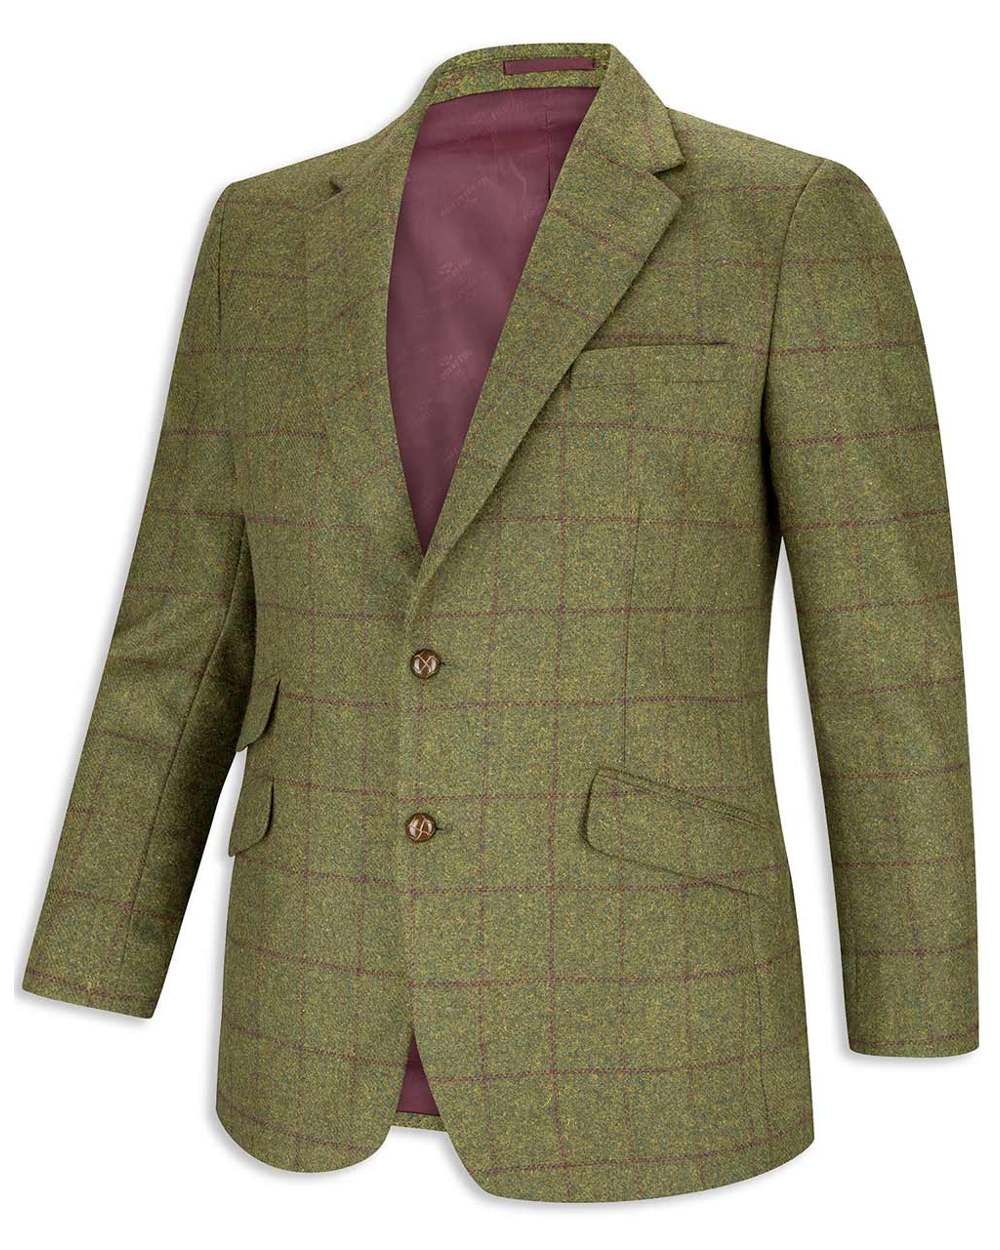 Olive/Wine coloured Hoggs of Fife Tummel Tweed Sports Jacket on white background 